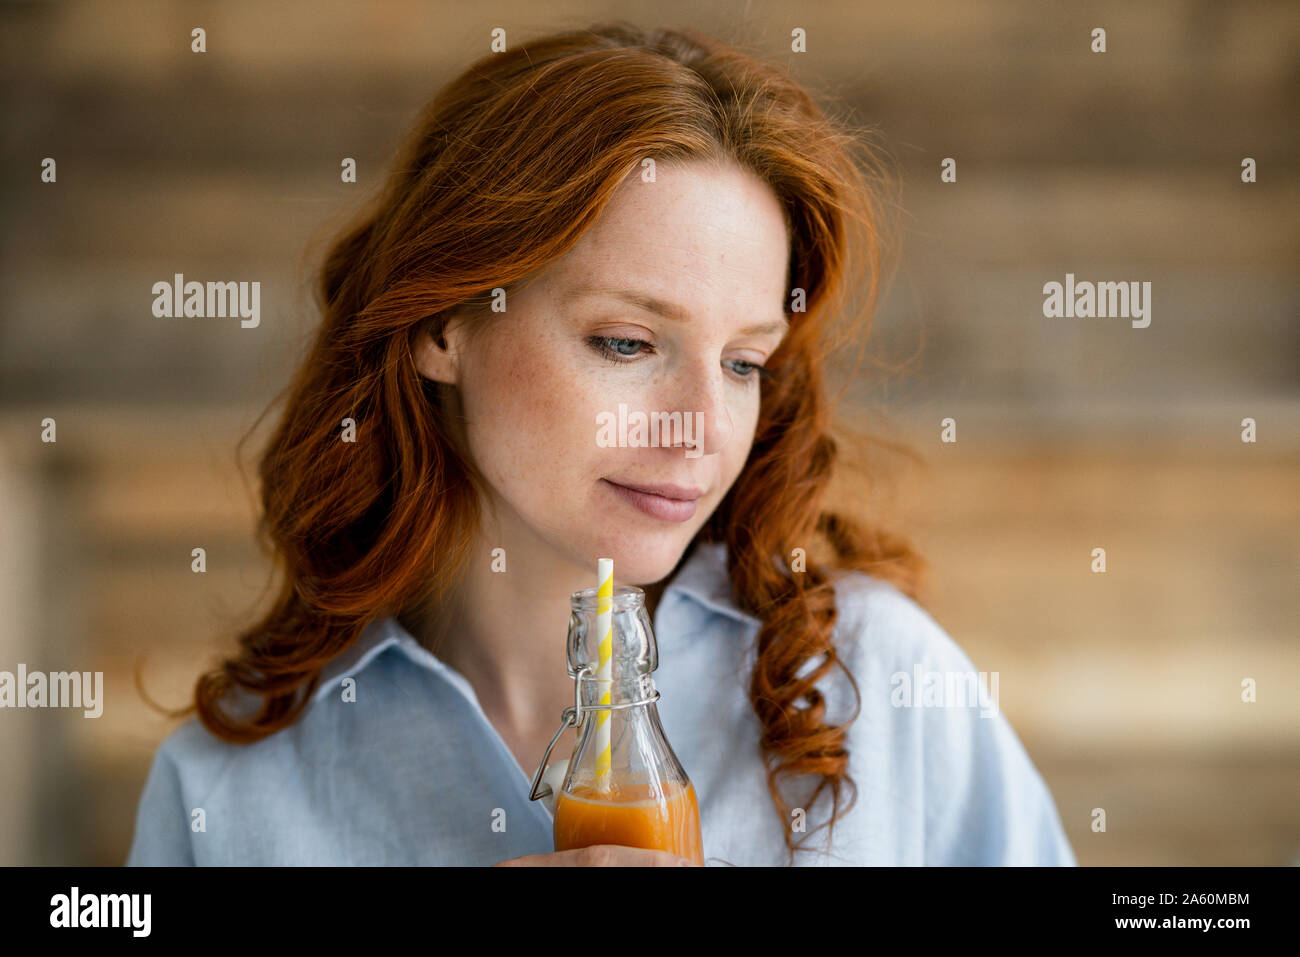 Portrait de femme rousse de boire du jus Banque D'Images